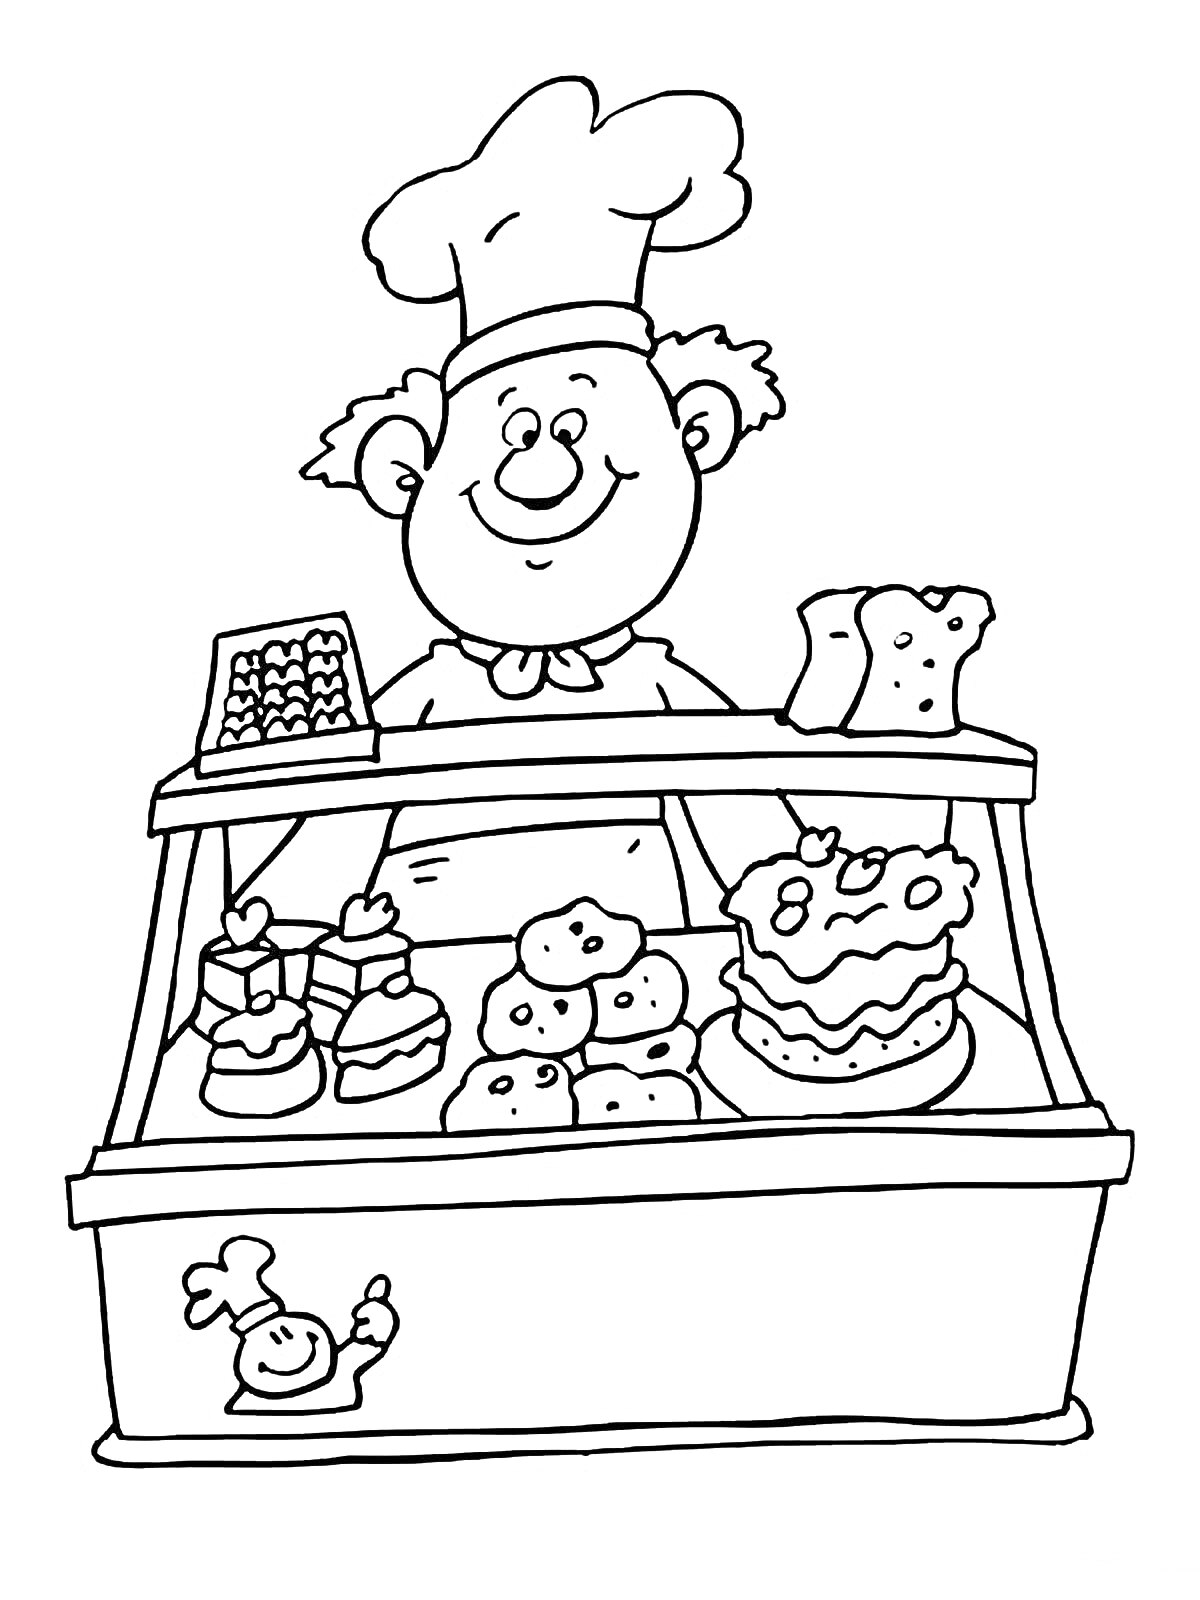 Раскраска Повар-кондитер за прилавком с выпечкой и кассовым аппаратом. На прилавке расположены пирожные, кексы, торт и буханки хлеба.